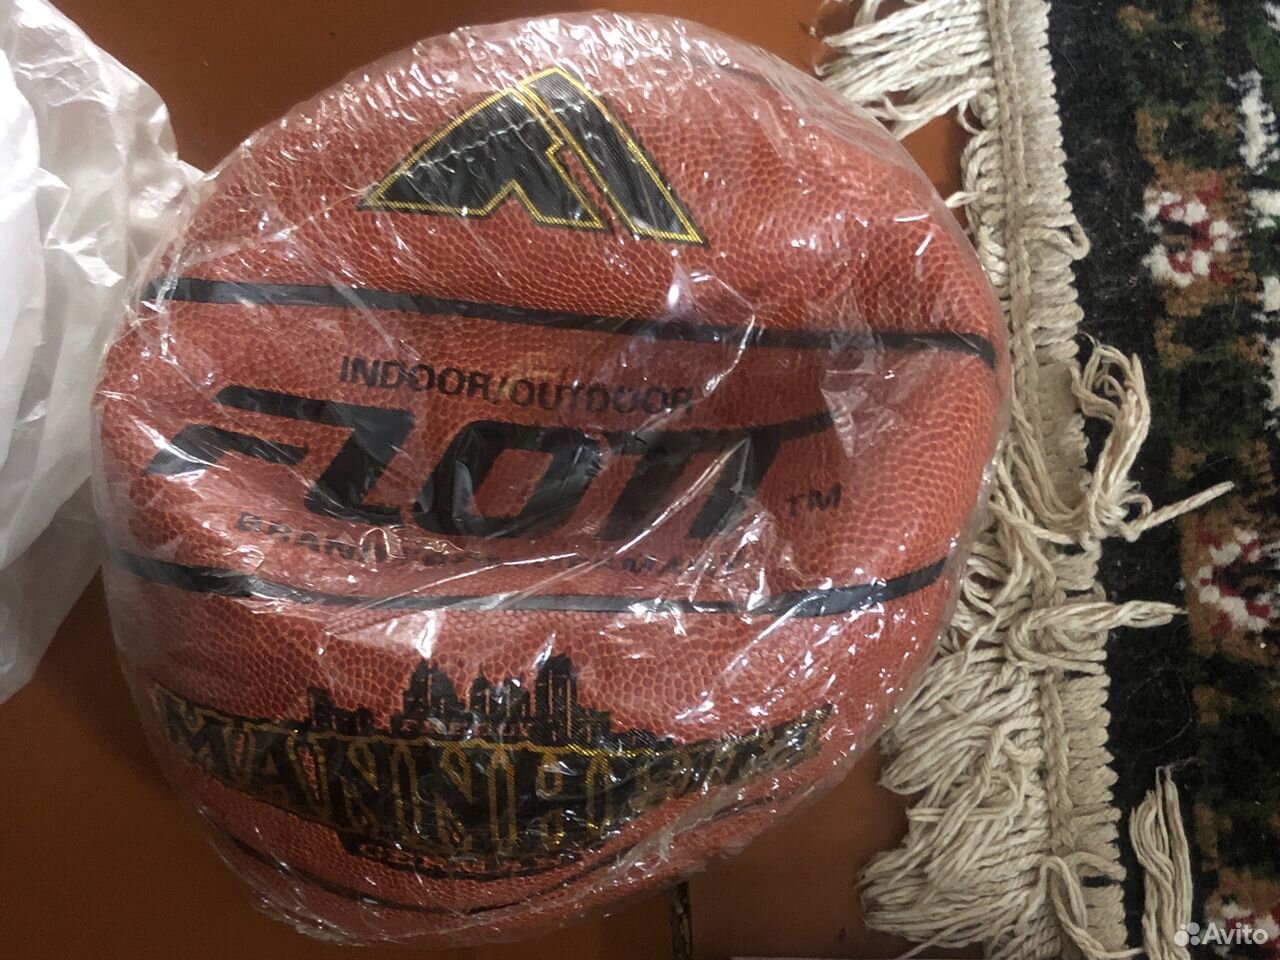 Баскетбольный мяч Flott 89672644918 купить 1